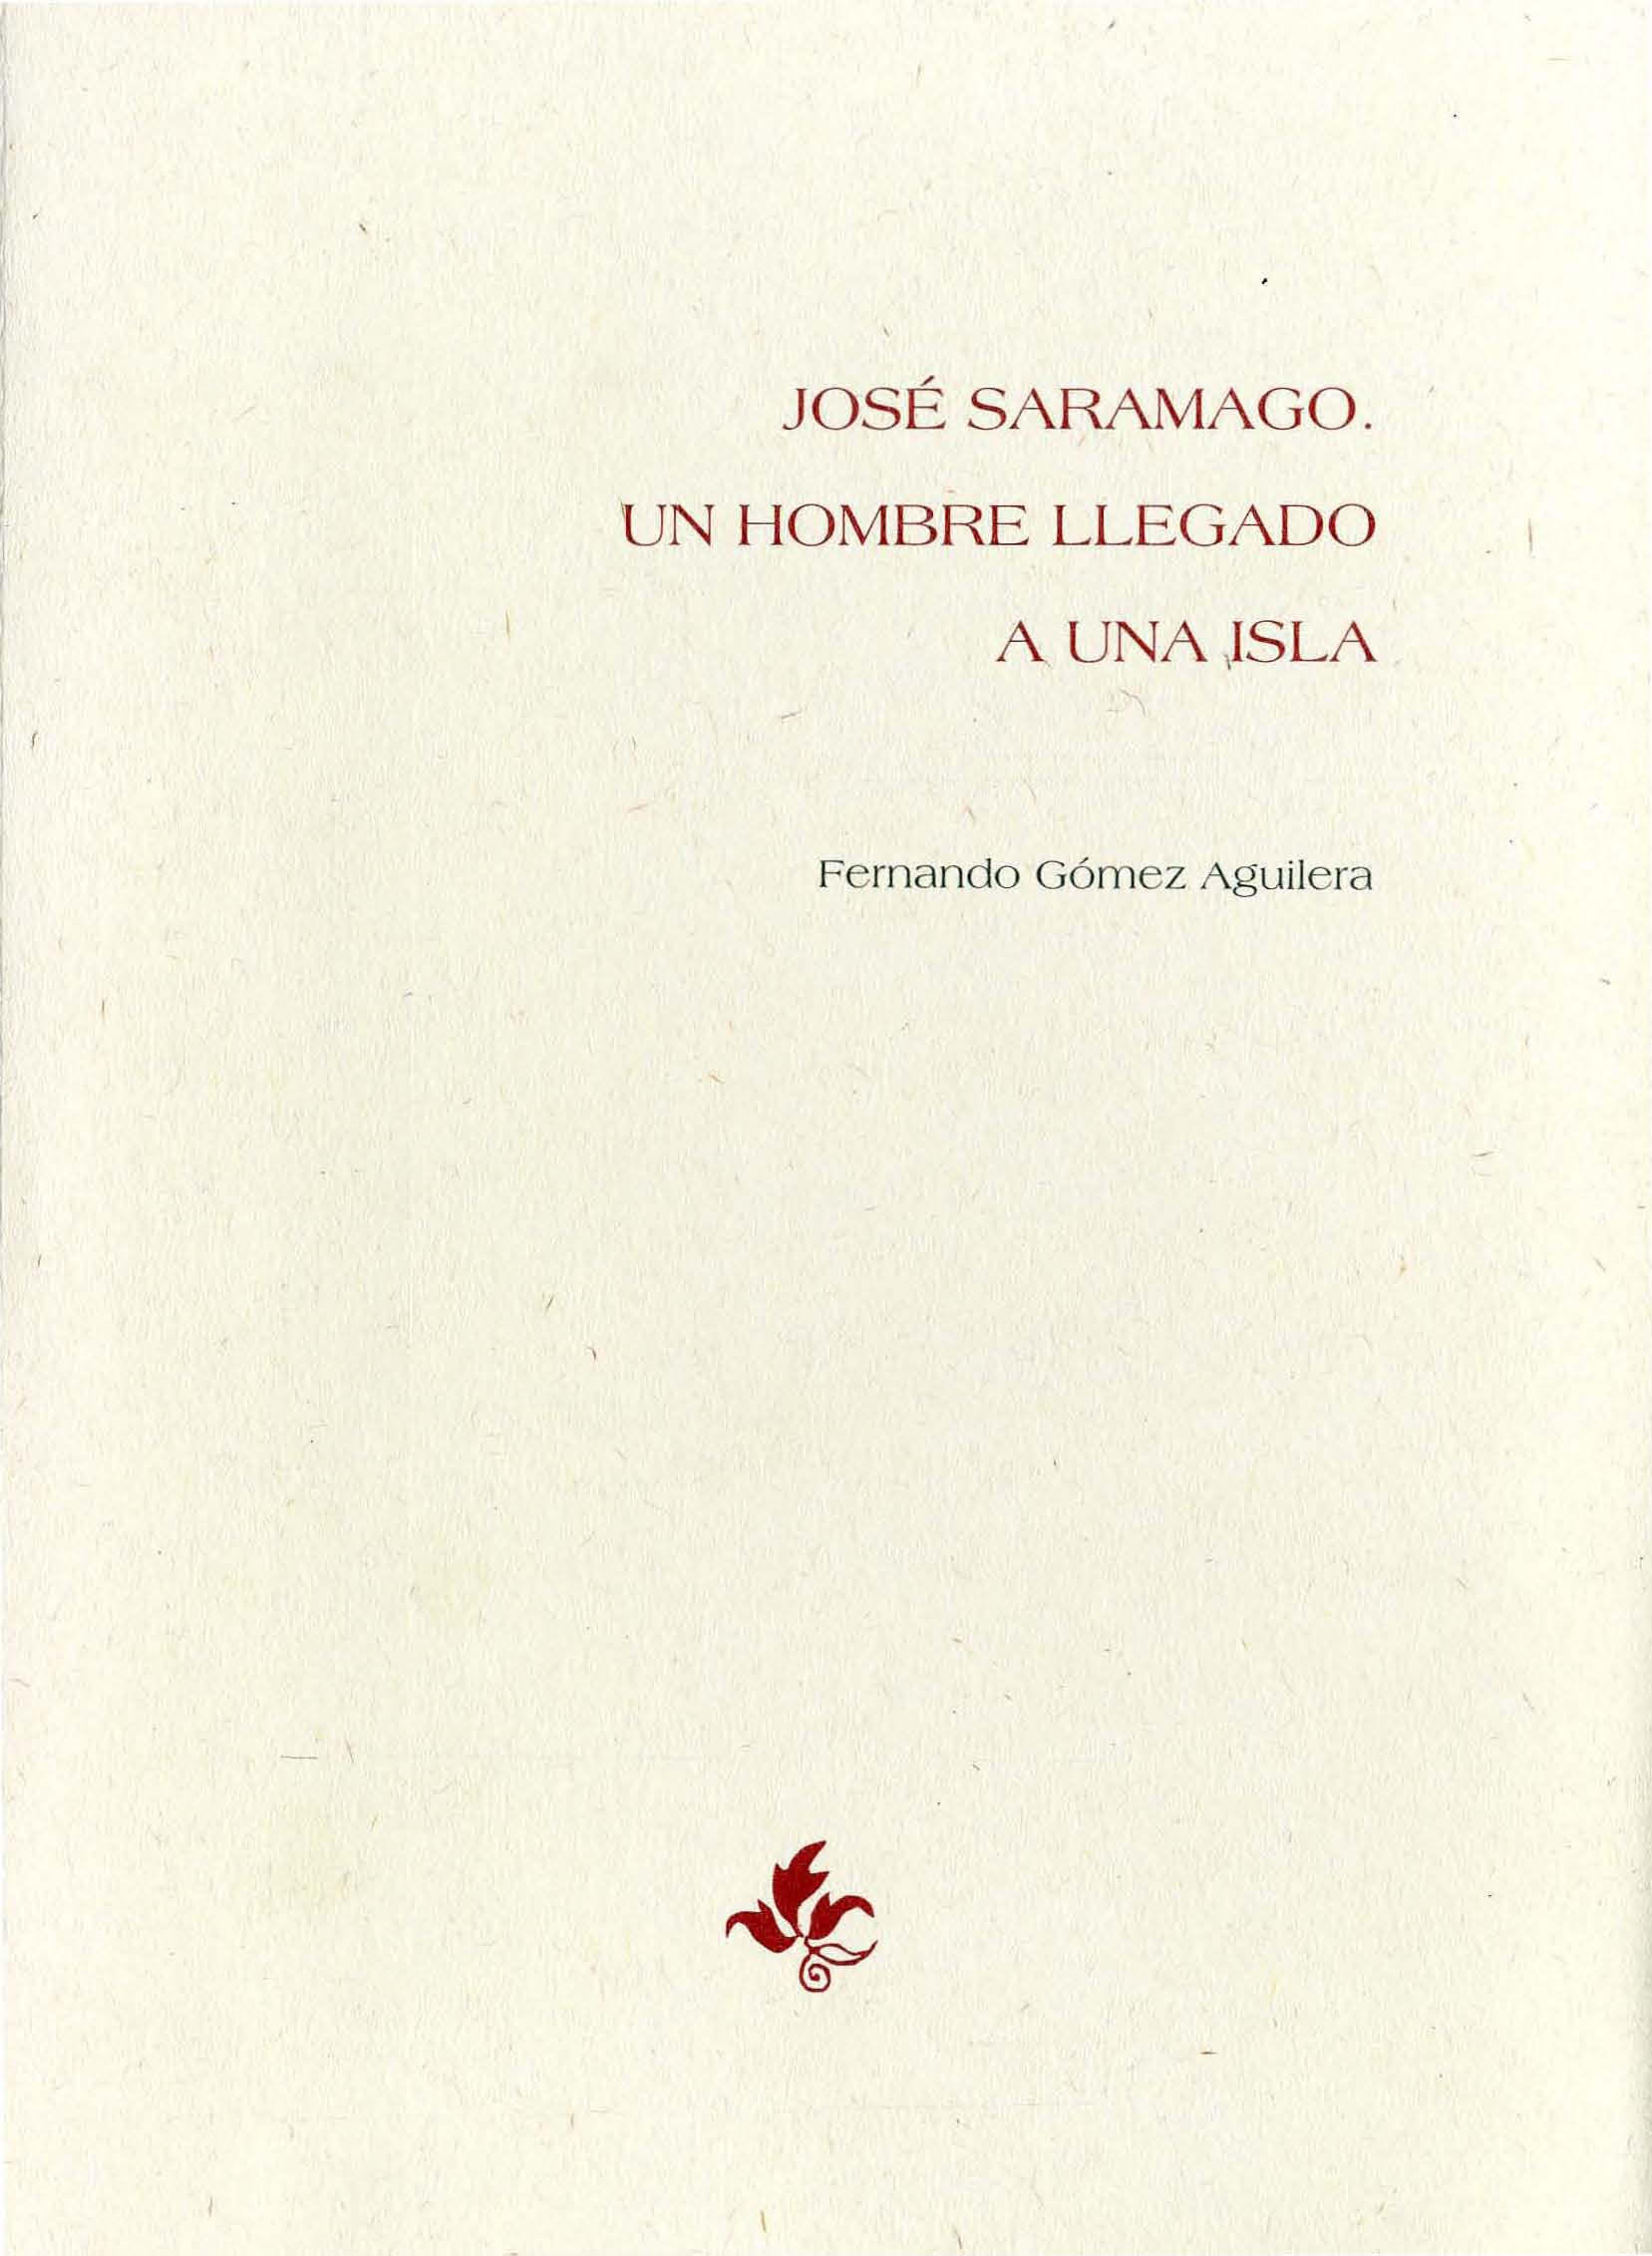 José Saramago : un hombre llegado a una isla, Hijo adoptivo de Lanzarote, 1997